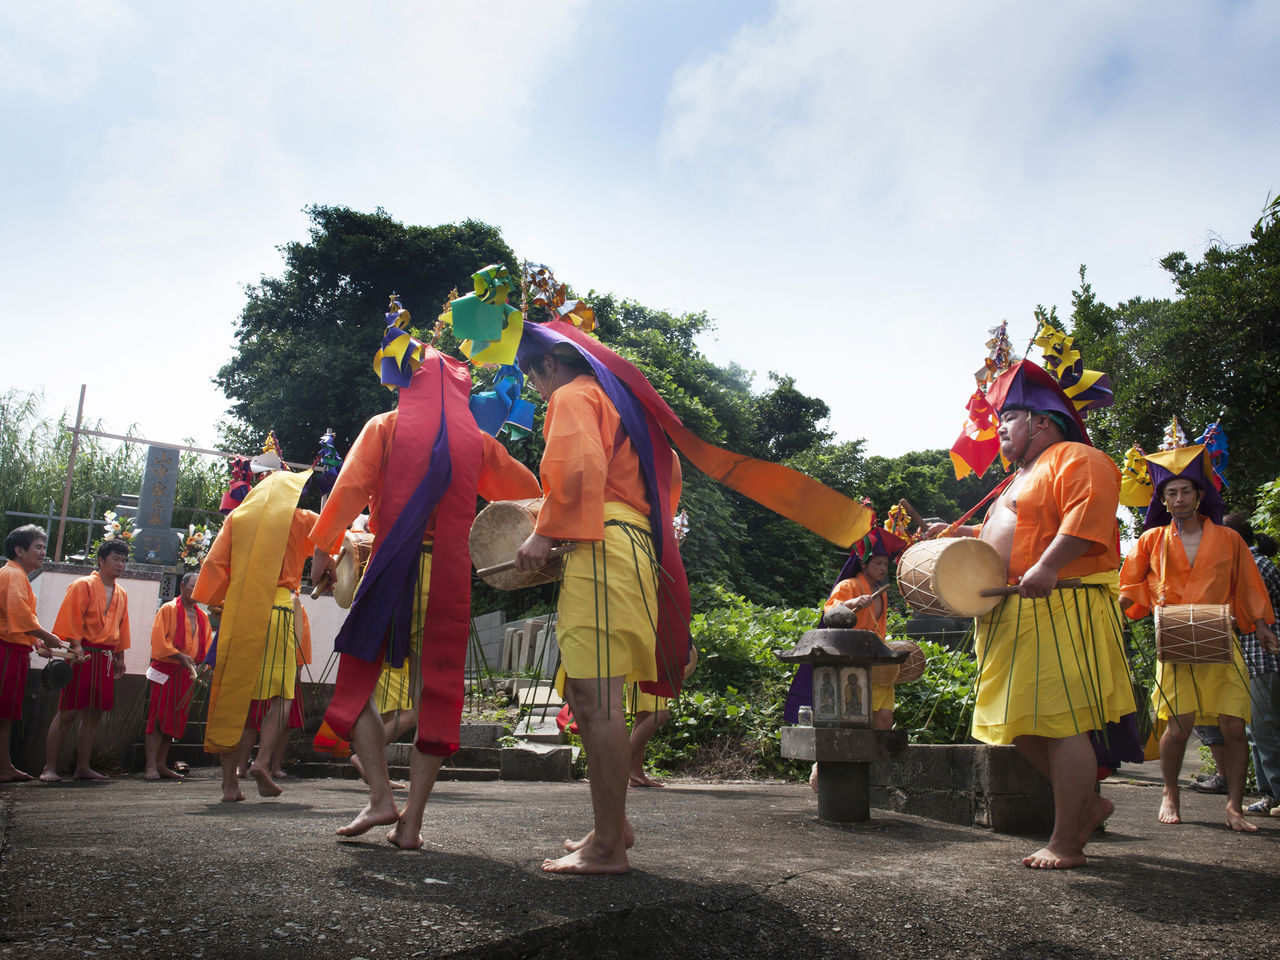 الأزياء الملونة وقرع الطبول الحيوي من بين عوامل الجذب في رقصات أوموندي.